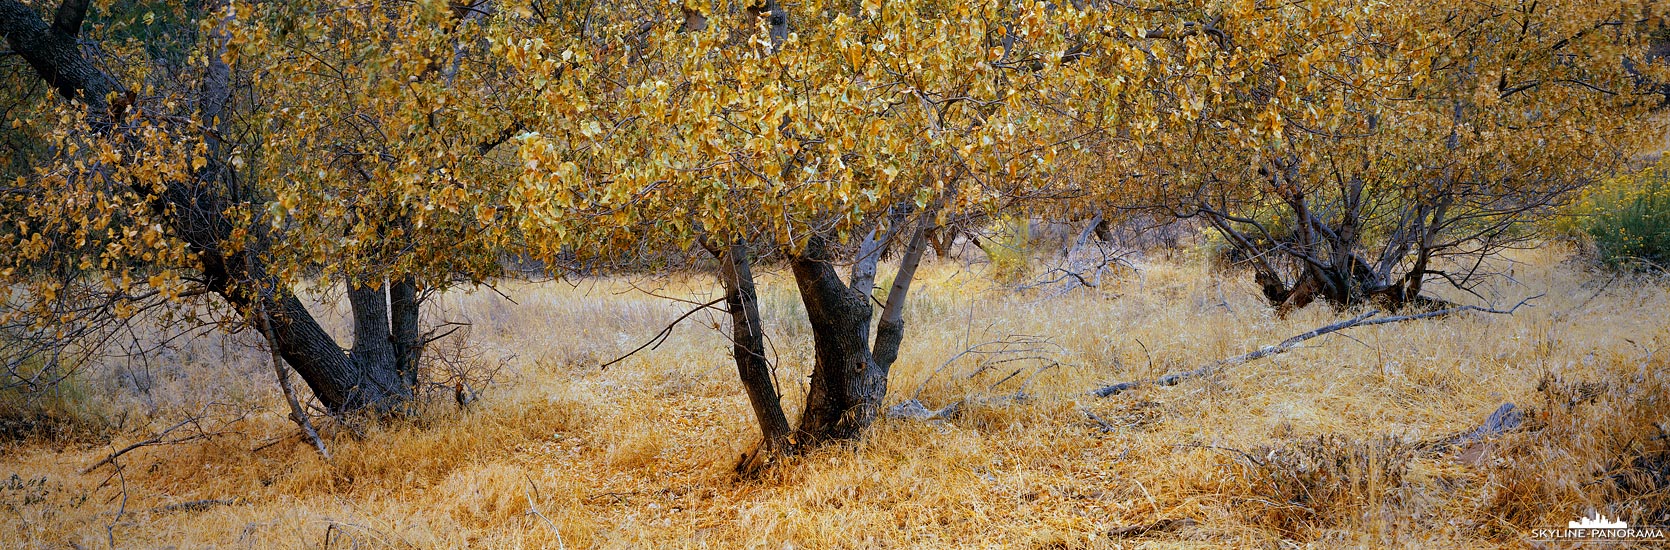 Herbstfarben im Zion Nationalpark (p_01162)